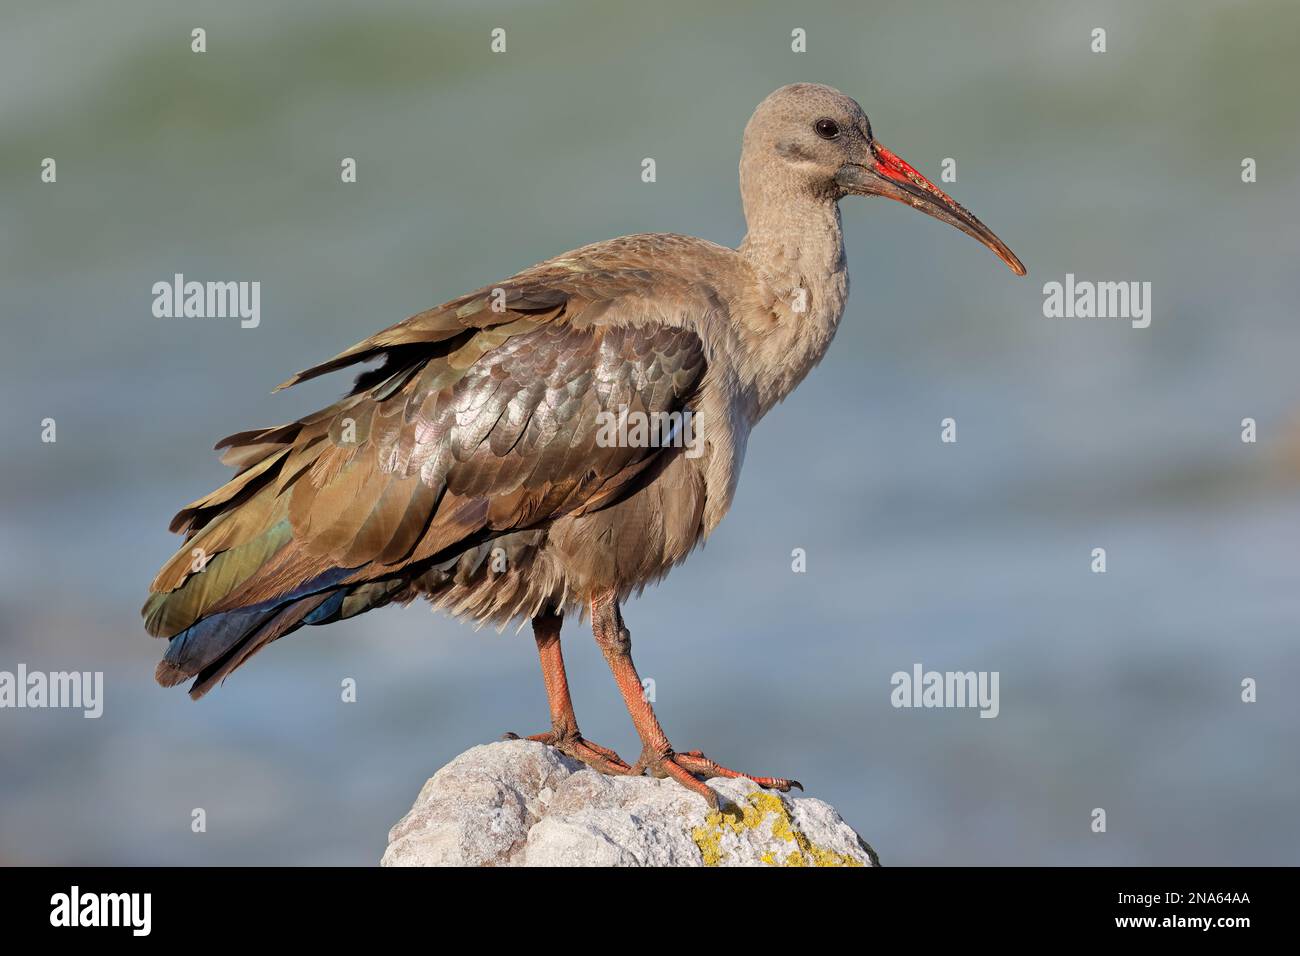 Un hadeda ibis (Bostrychia hagedash) encaramado en una roca, Sudáfrica Foto de stock